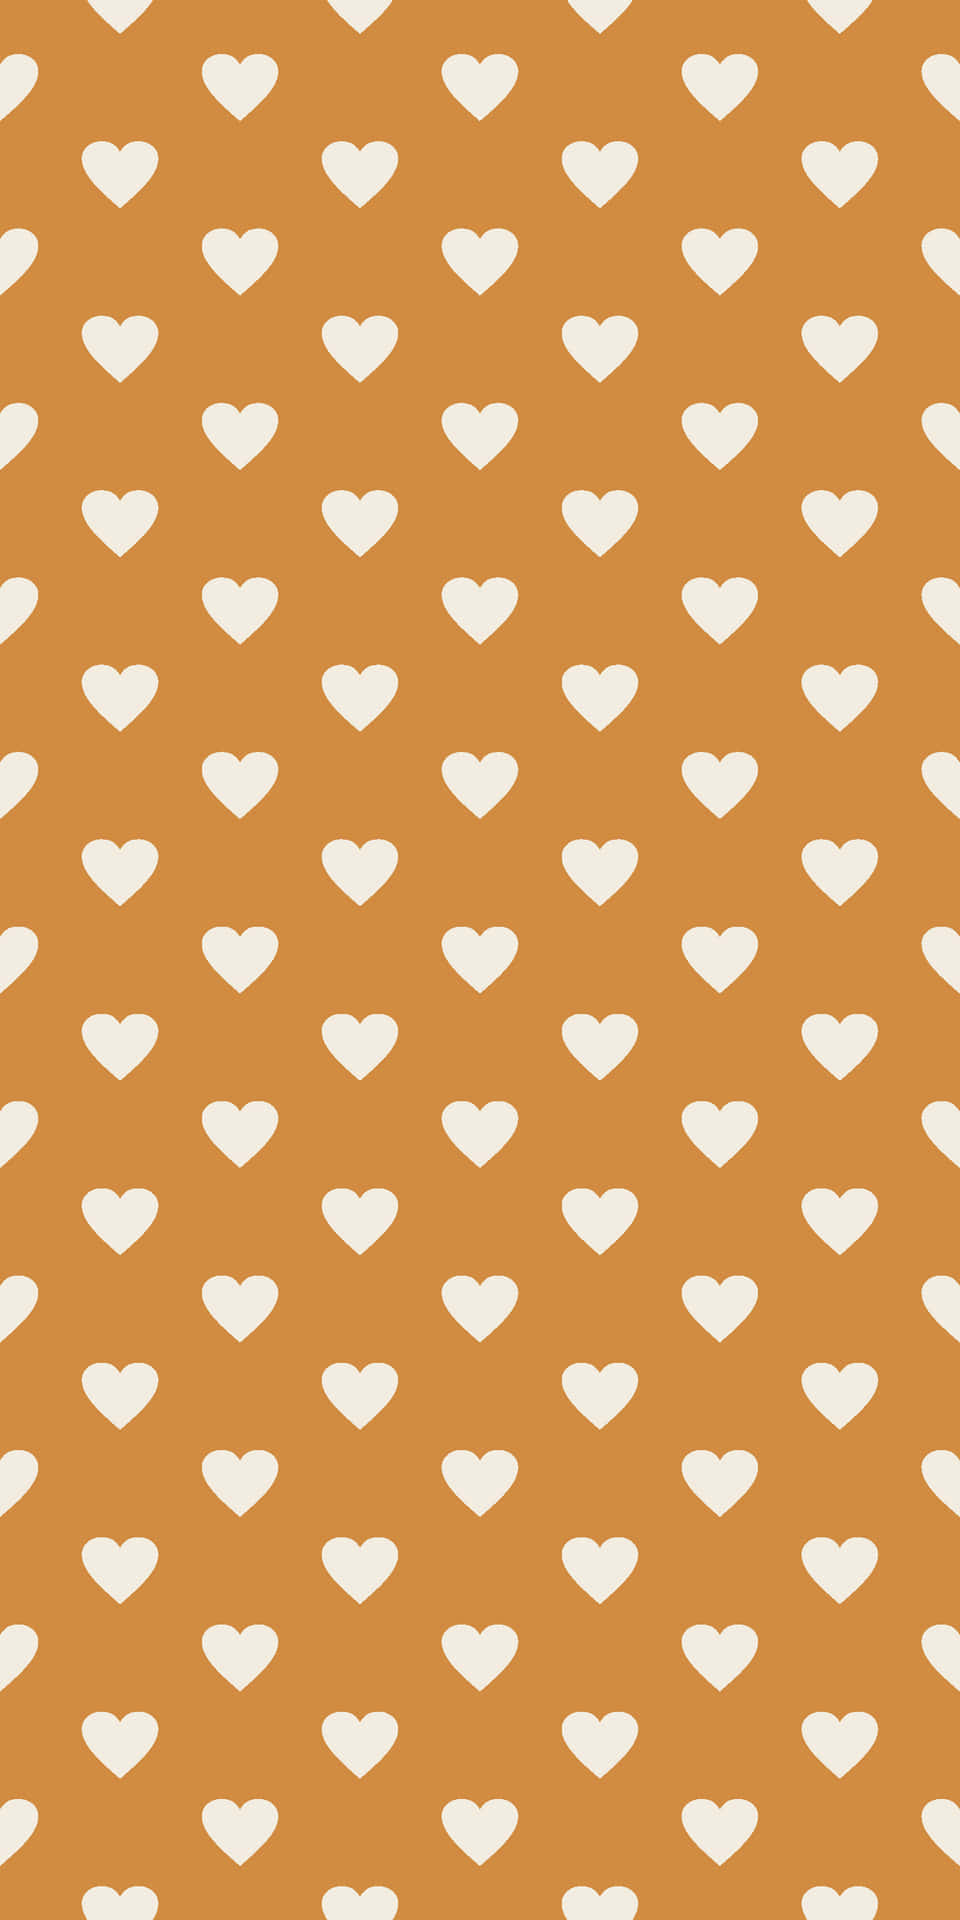 Fondode Pantalla De Patrón De Corazones En Color Naranja Oscuro Con Estética Para Teléfono. Fondo de pantalla